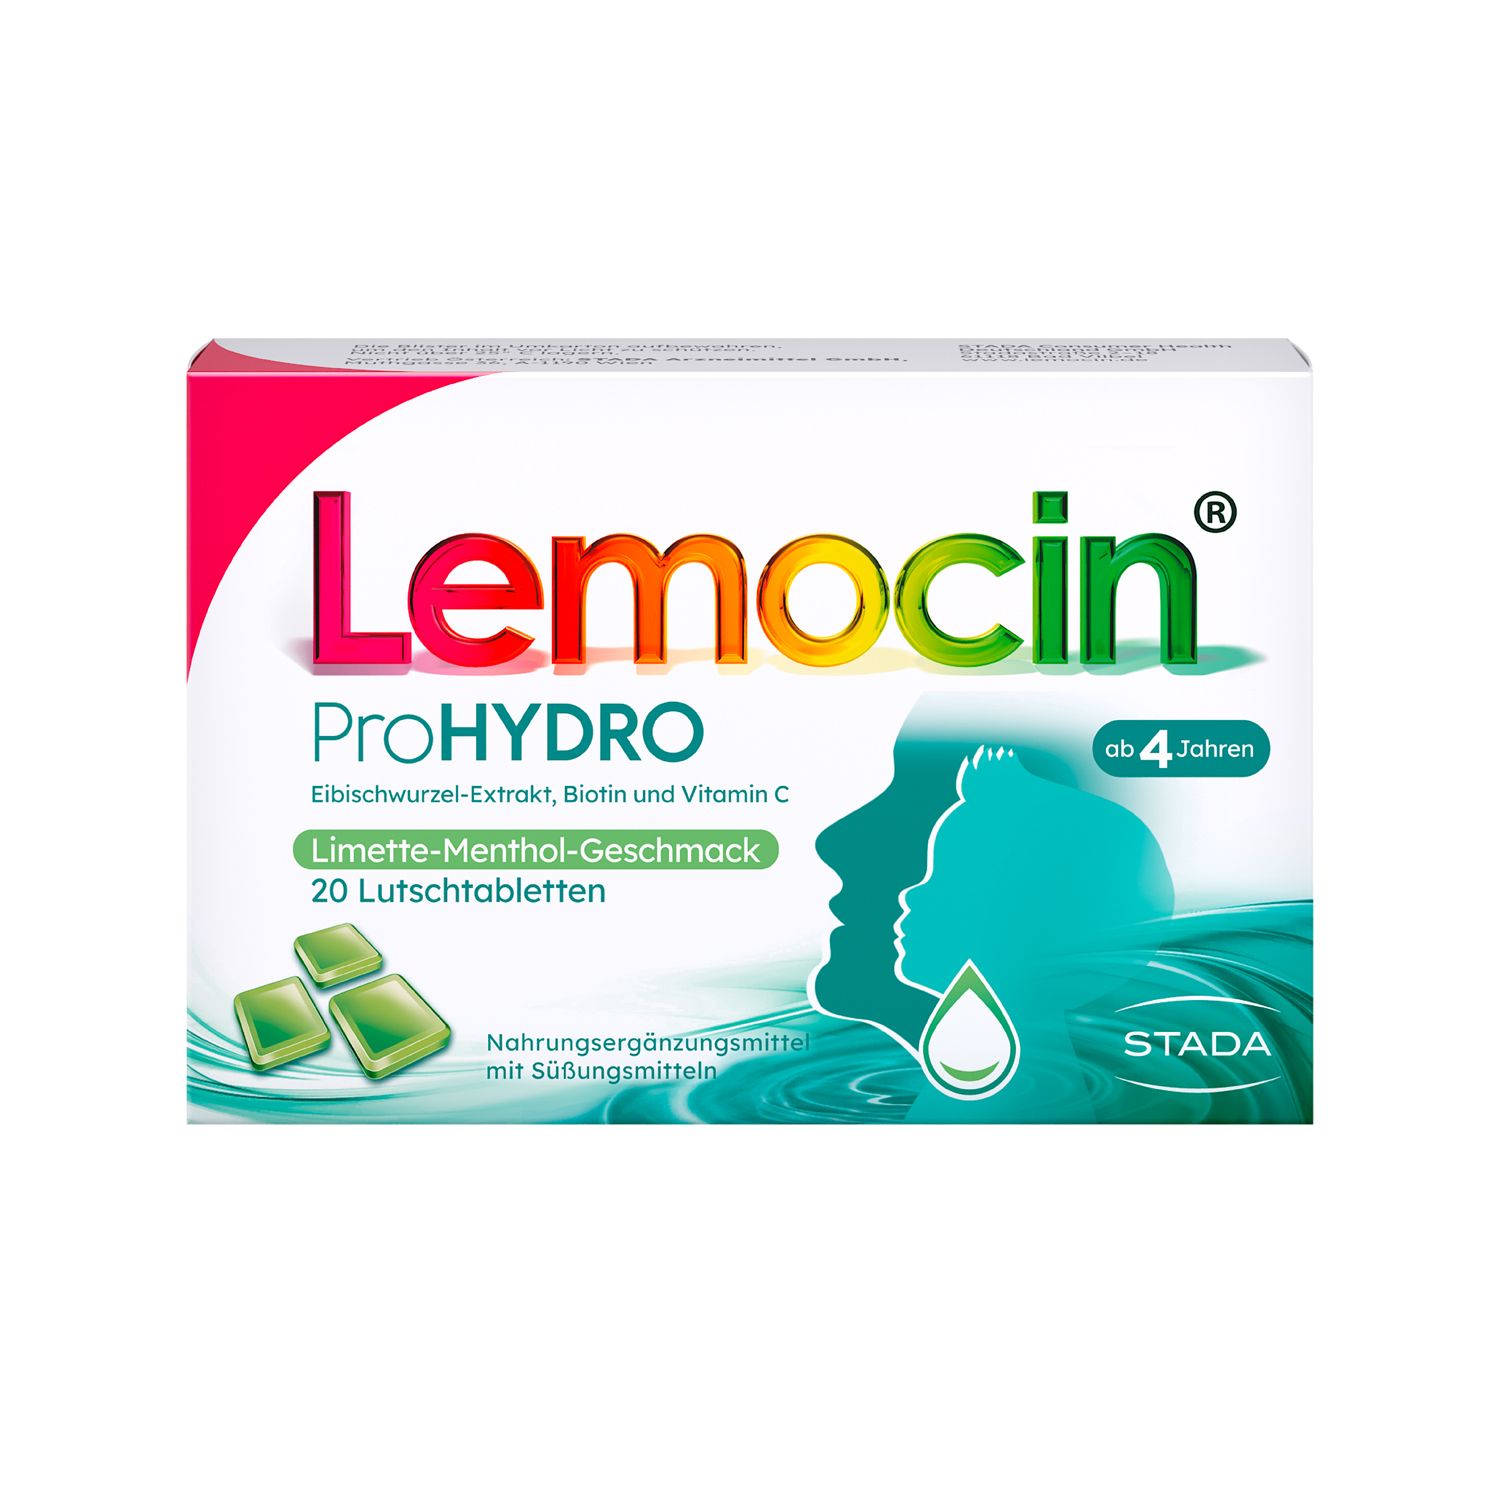 Lemocin® ProHYDRO für zwischendurch – Lutschtabletten mit Vitamin C, Biotin und Eibischwurzelextrakt zur Beruhigung und 